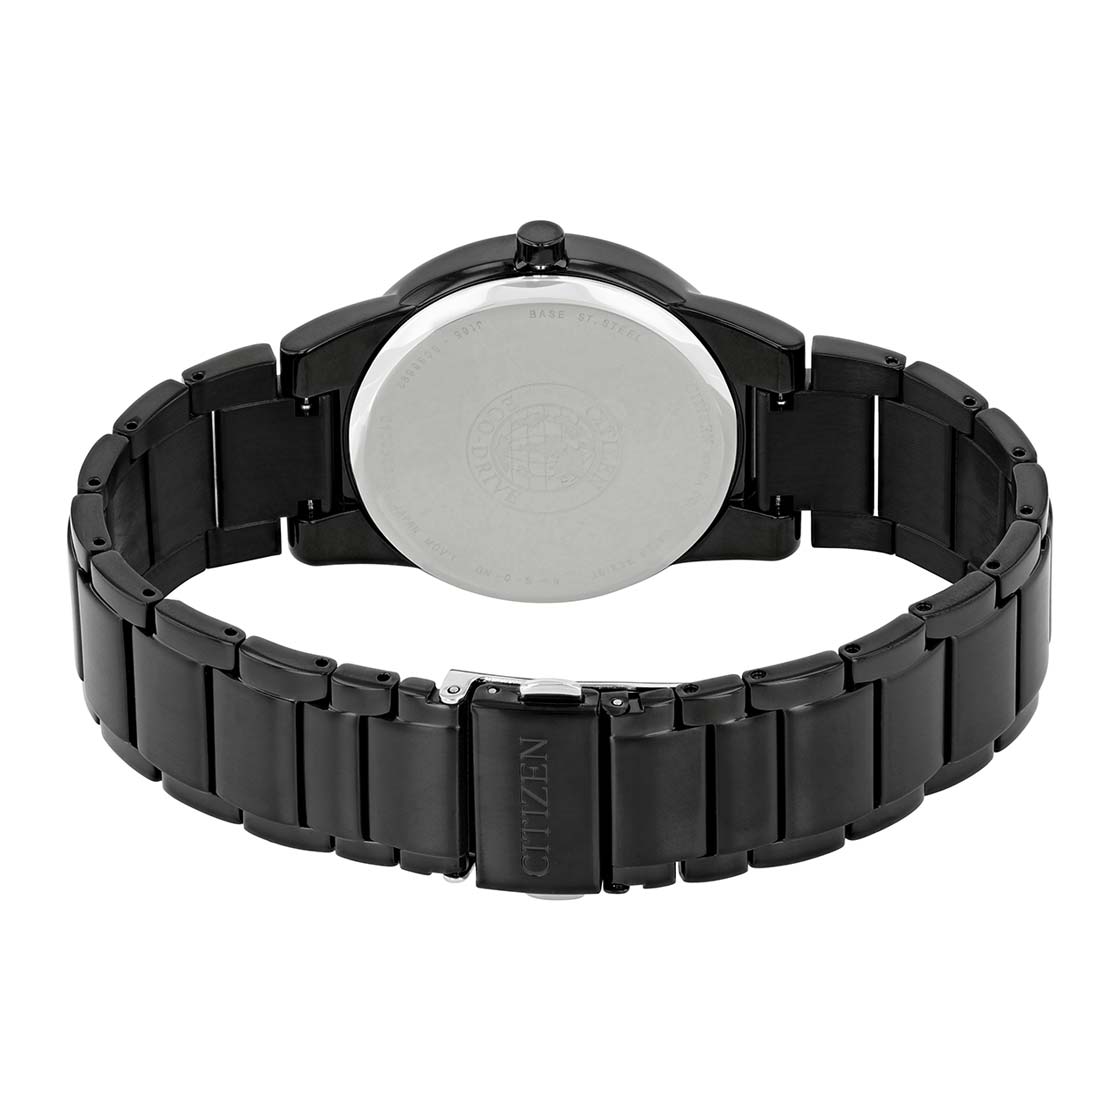 Citizen - AU1065-58E - Eco Drive Chronograph Watch For Men